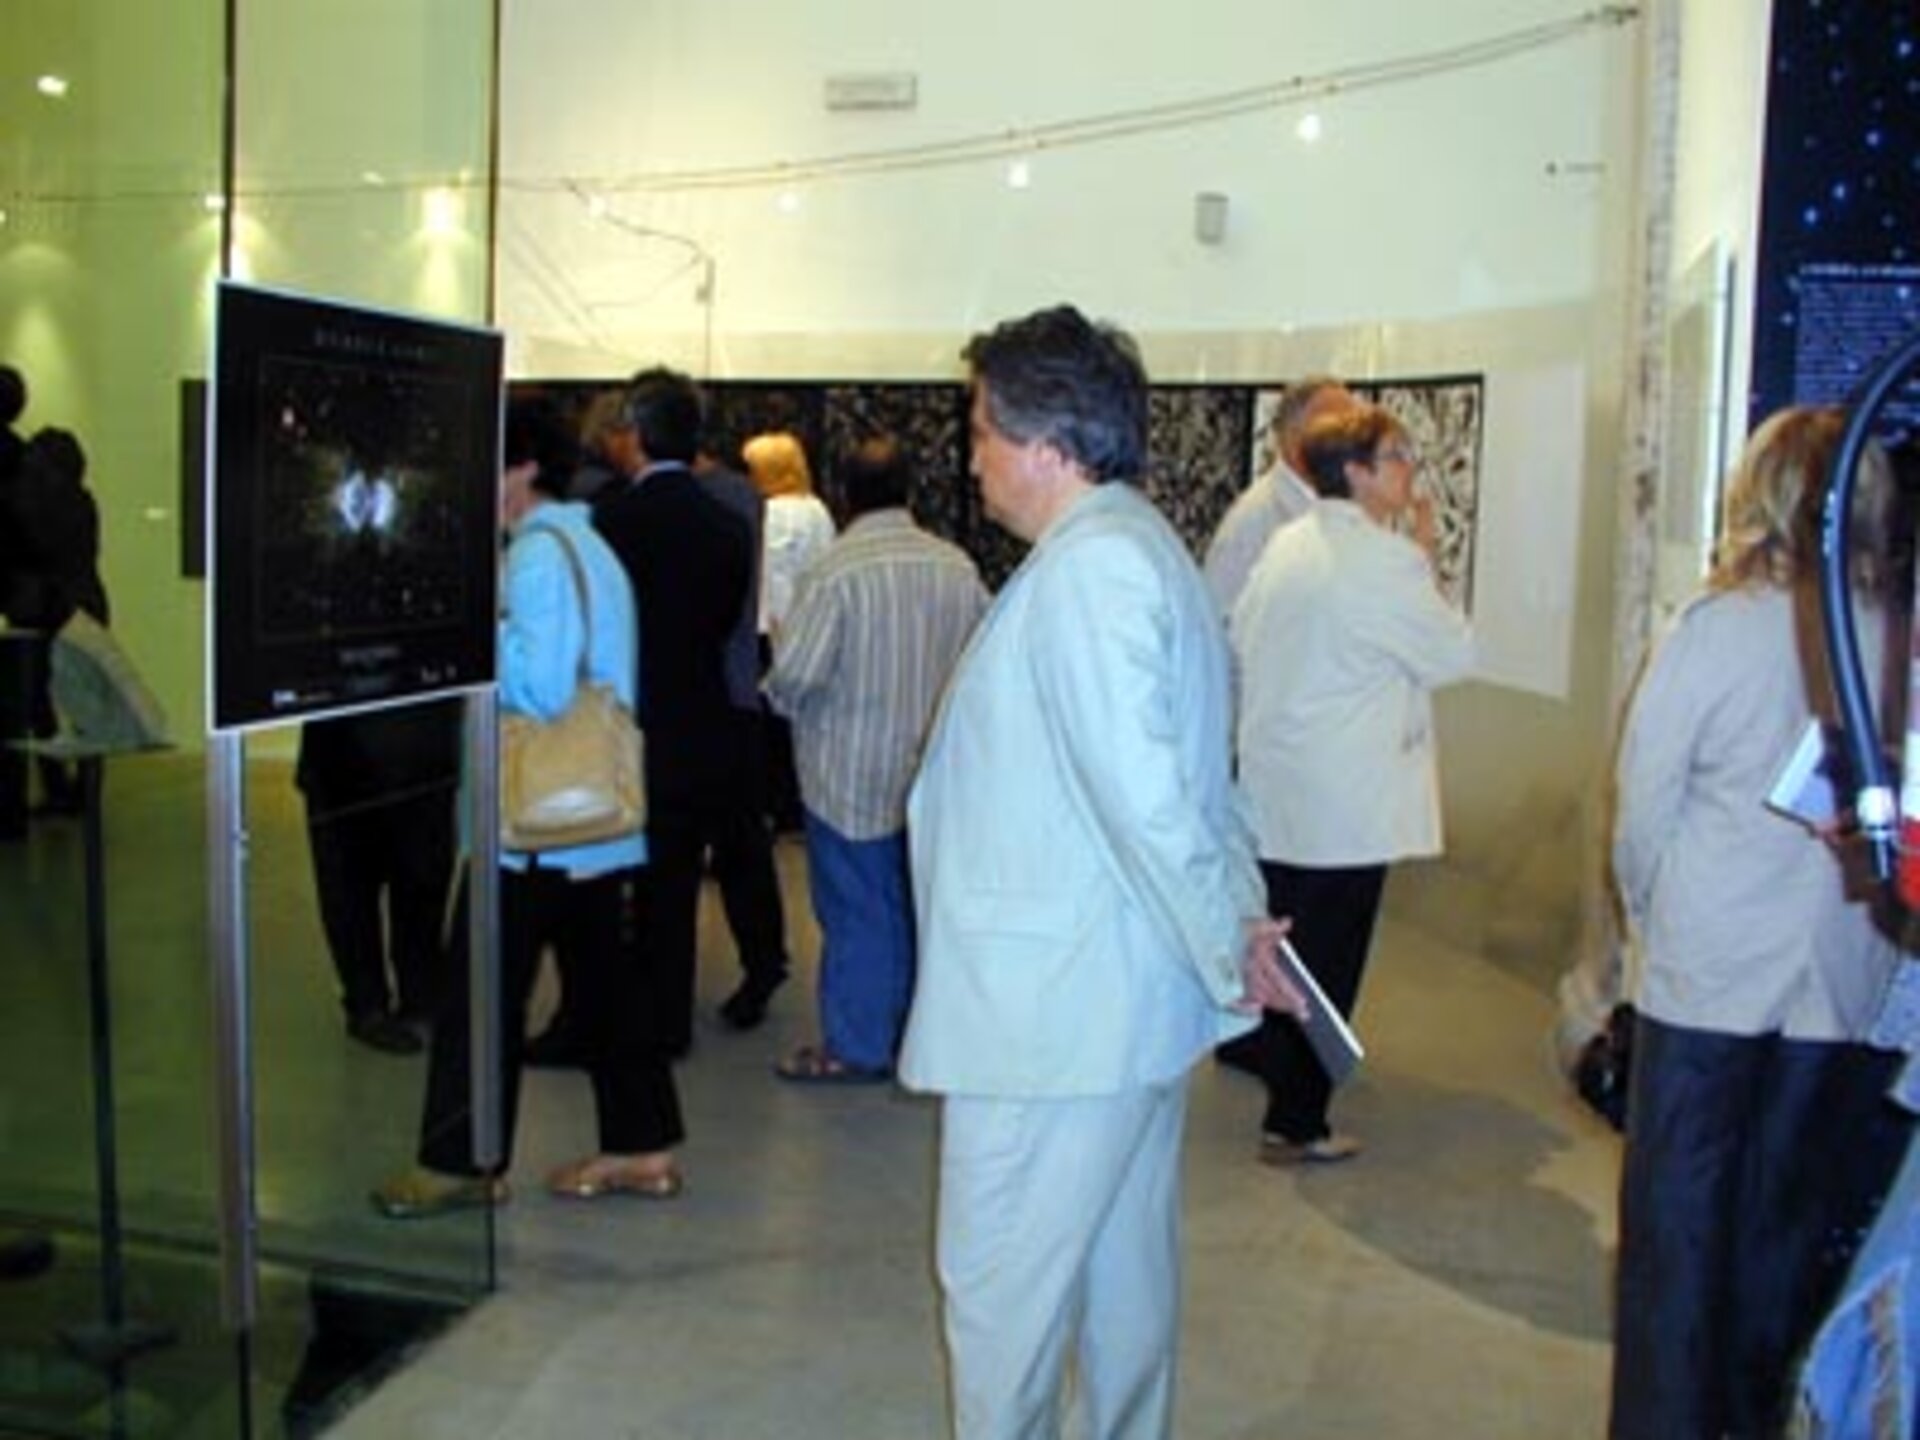 Sponsored by ESA, the art exhibition 'Doppio6Verso' had taken place on June 2002 at Scuderie Aldobrandini in Frascati, near Rome